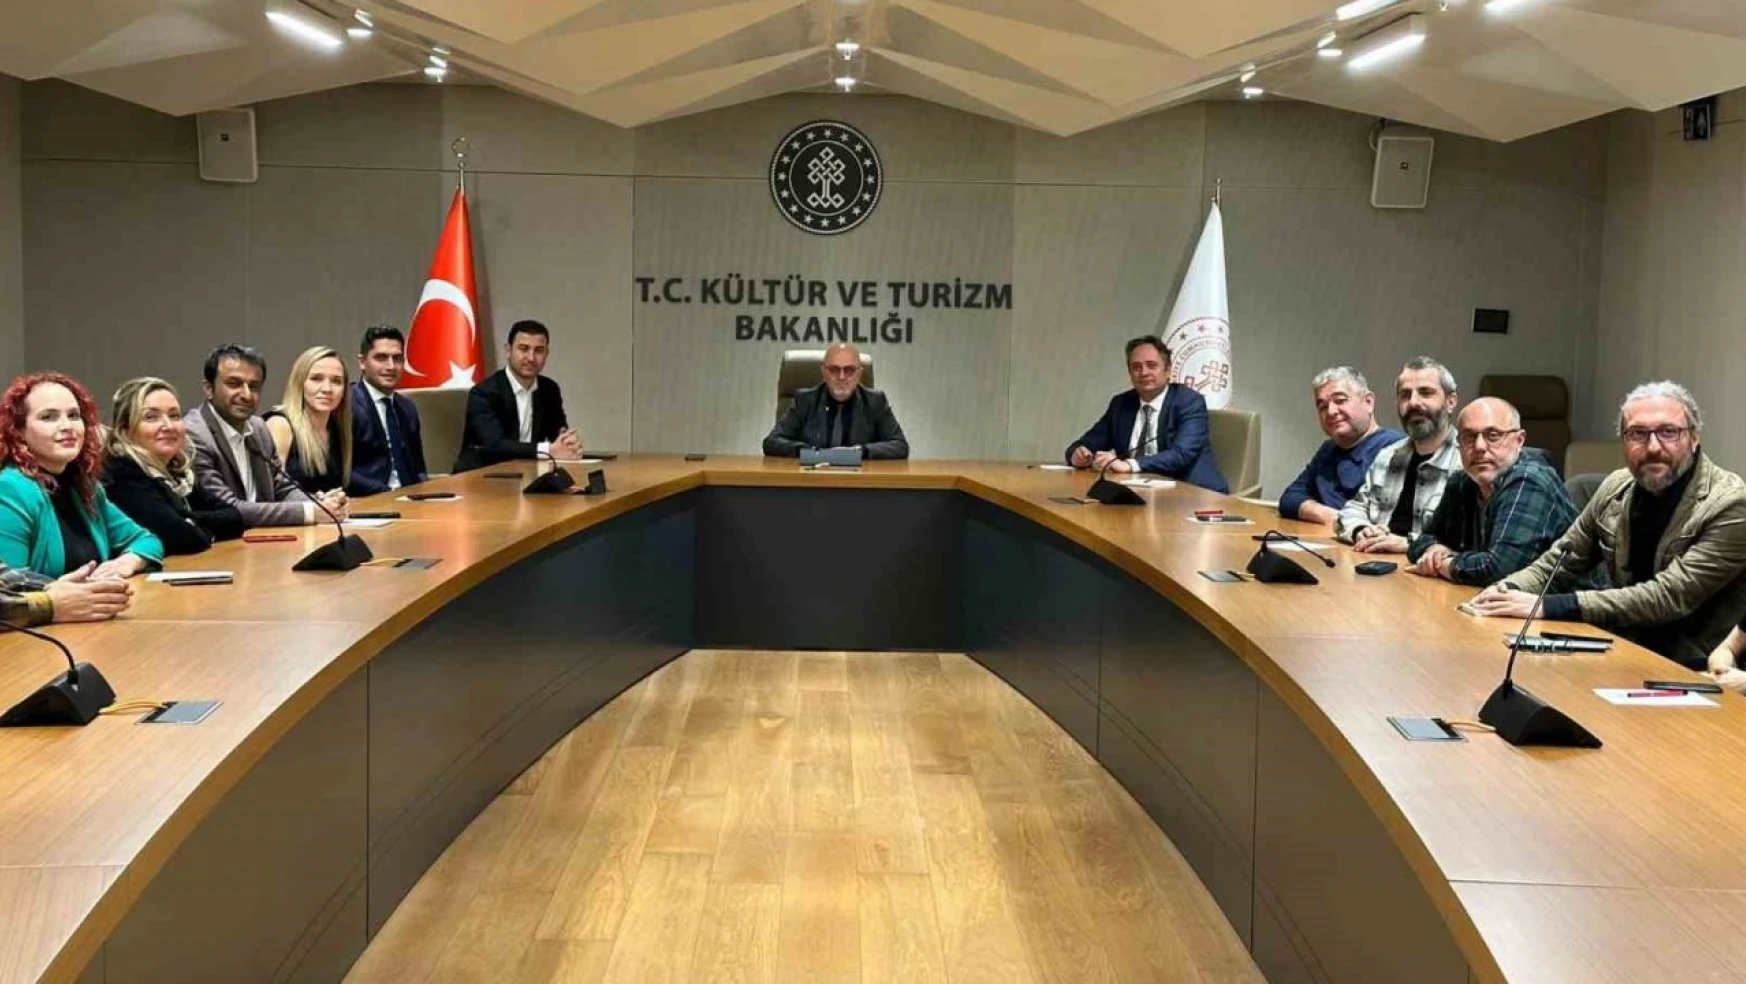 Sinama Genel Müdürü Güven: '180 ülkede 1 milyara yakın insan Türk dizilerini seyrediyor'